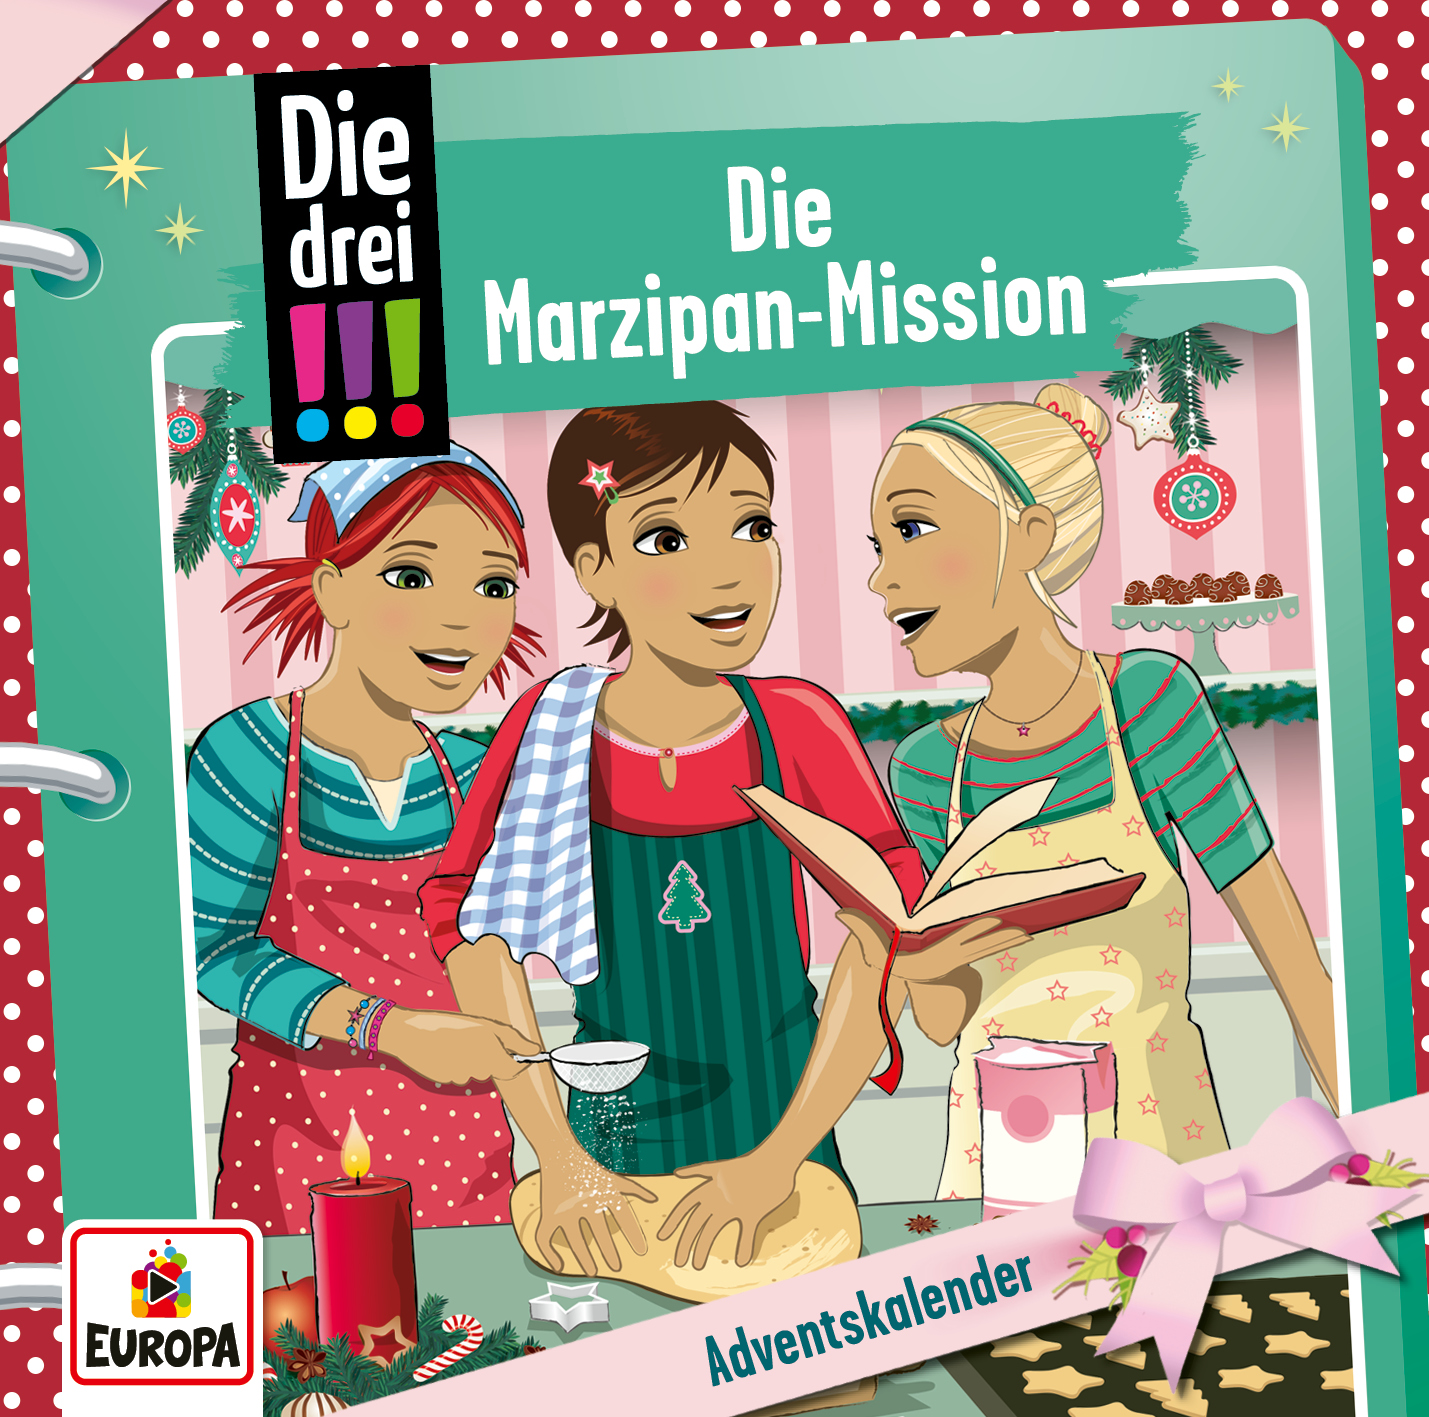 Die drei !!! - Die Marzipan-Mission (Adventskalender)